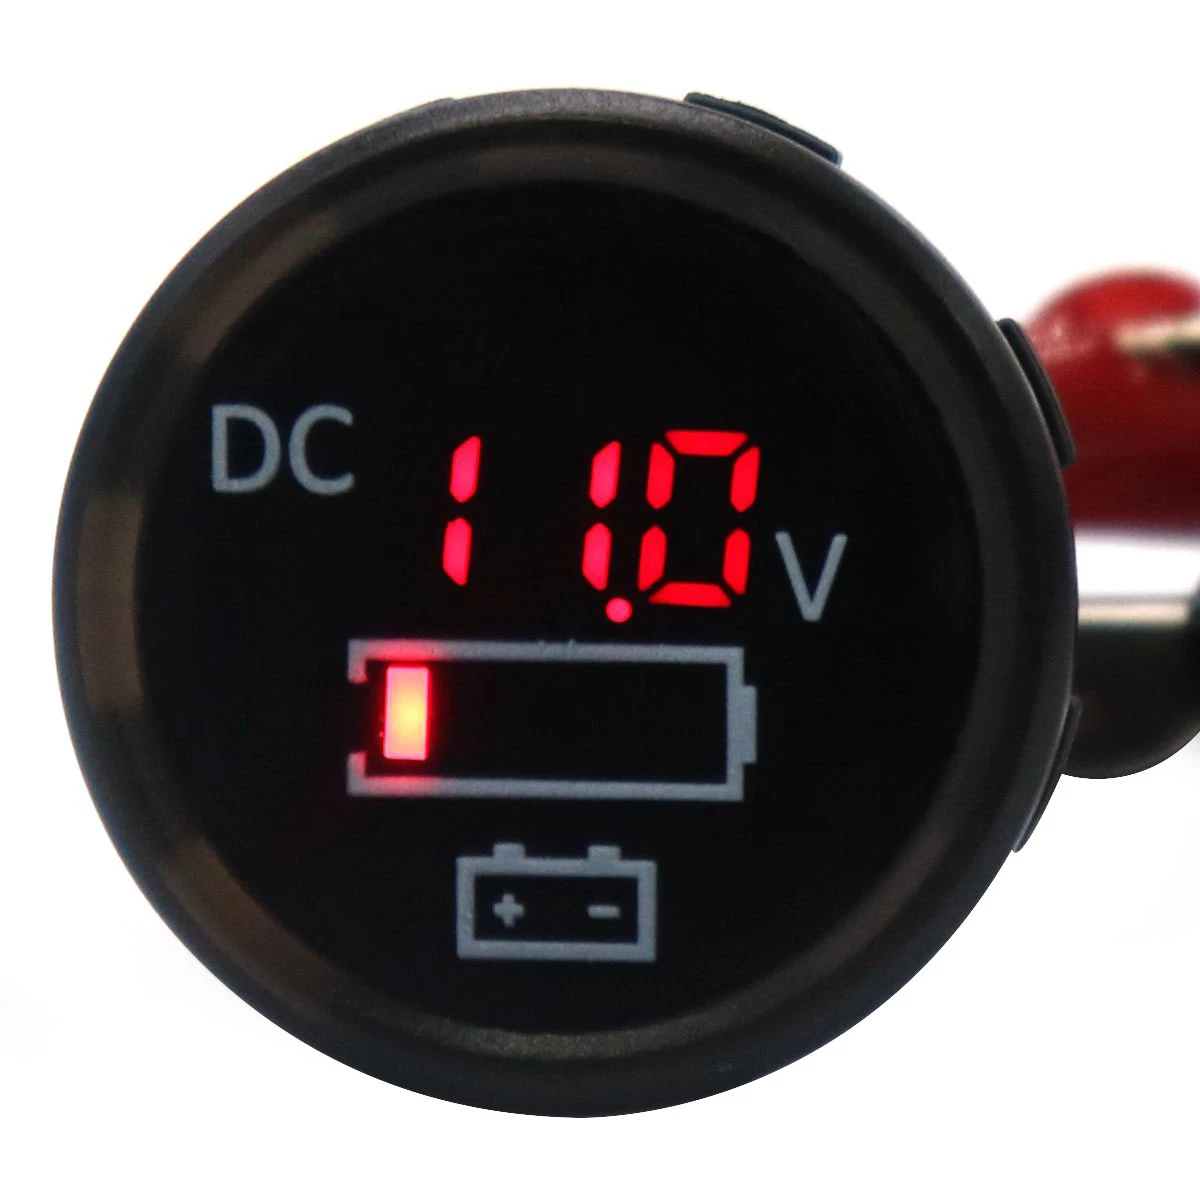 12V-24V LED Digital DC Voltmeter Car Marine Motorcycle Voltage Meter Gauge